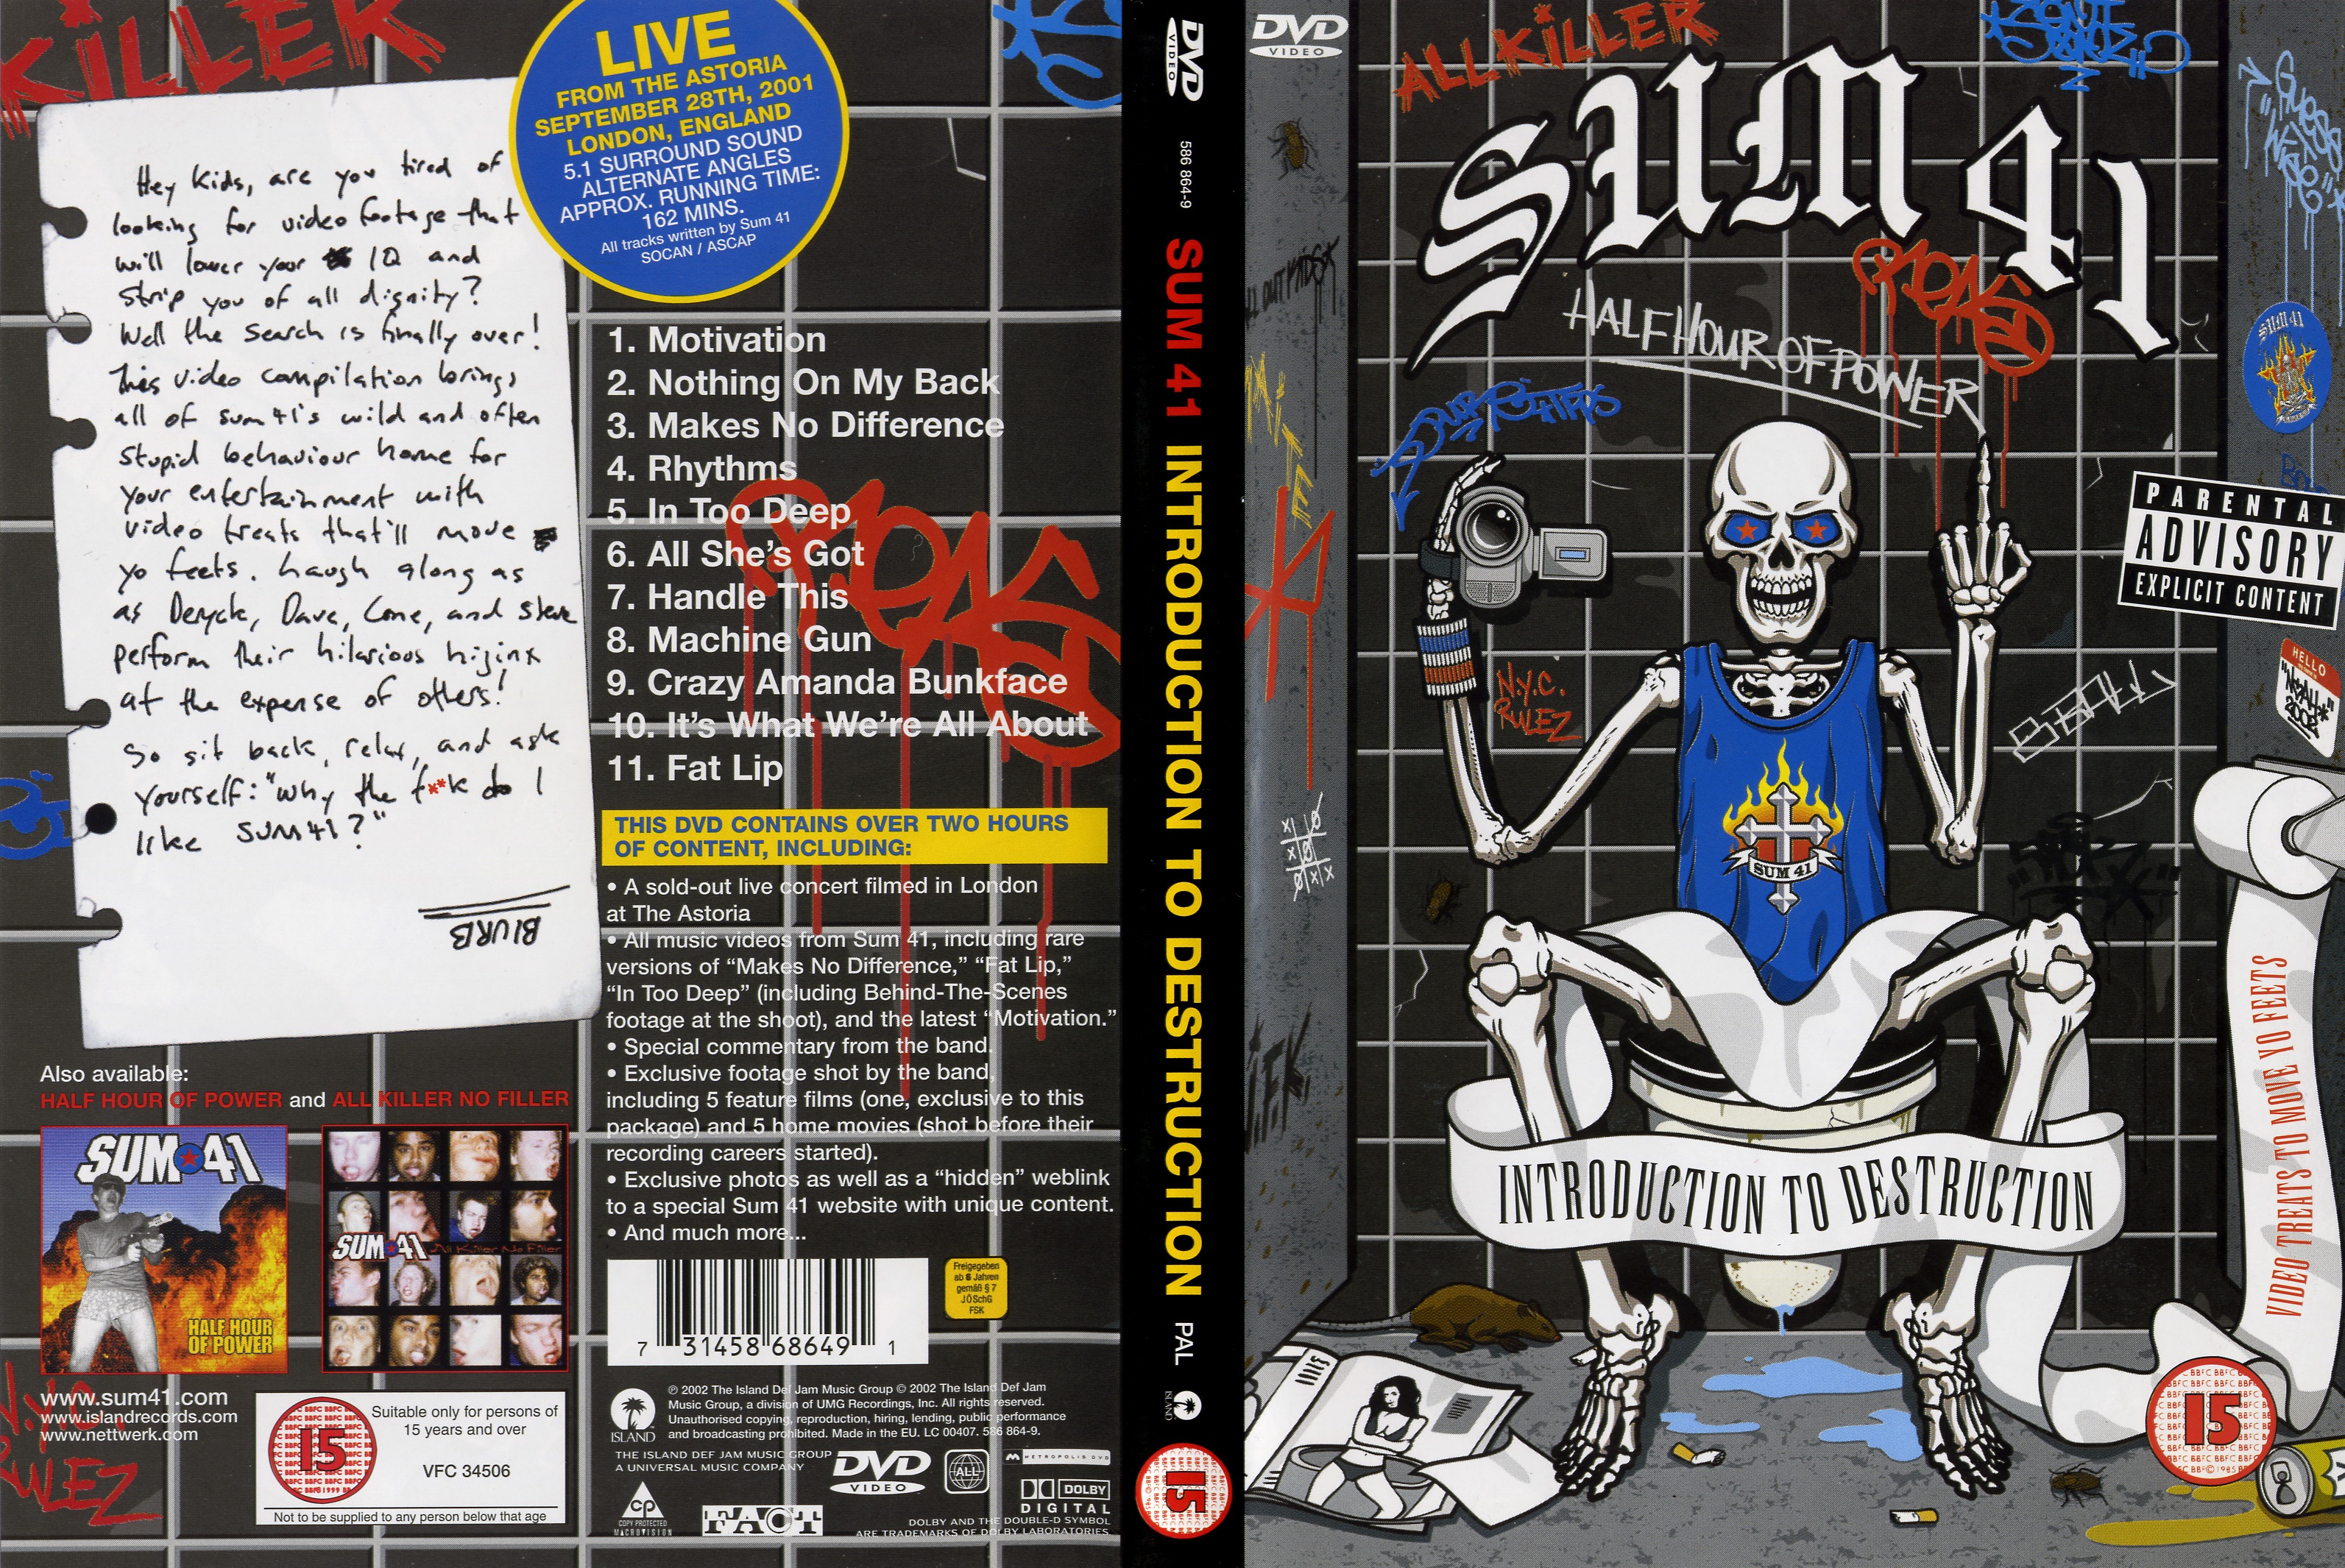 Jaquette DVD Sum 41 - Introduction to destruction